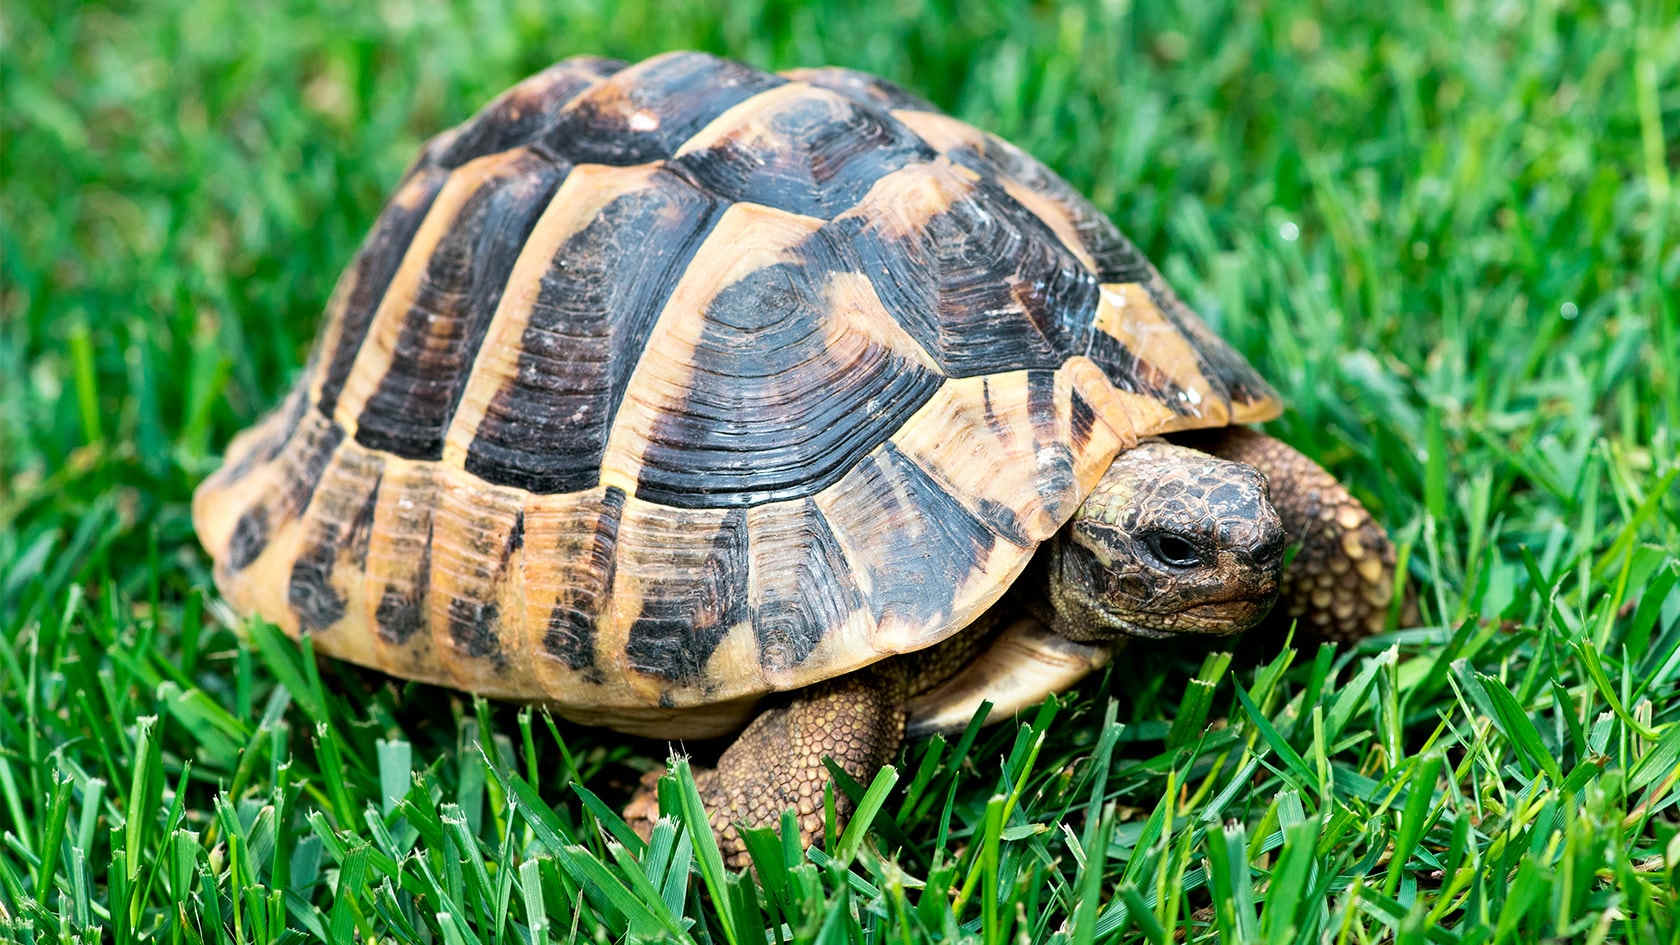 Gresk landskilpadde i gresset